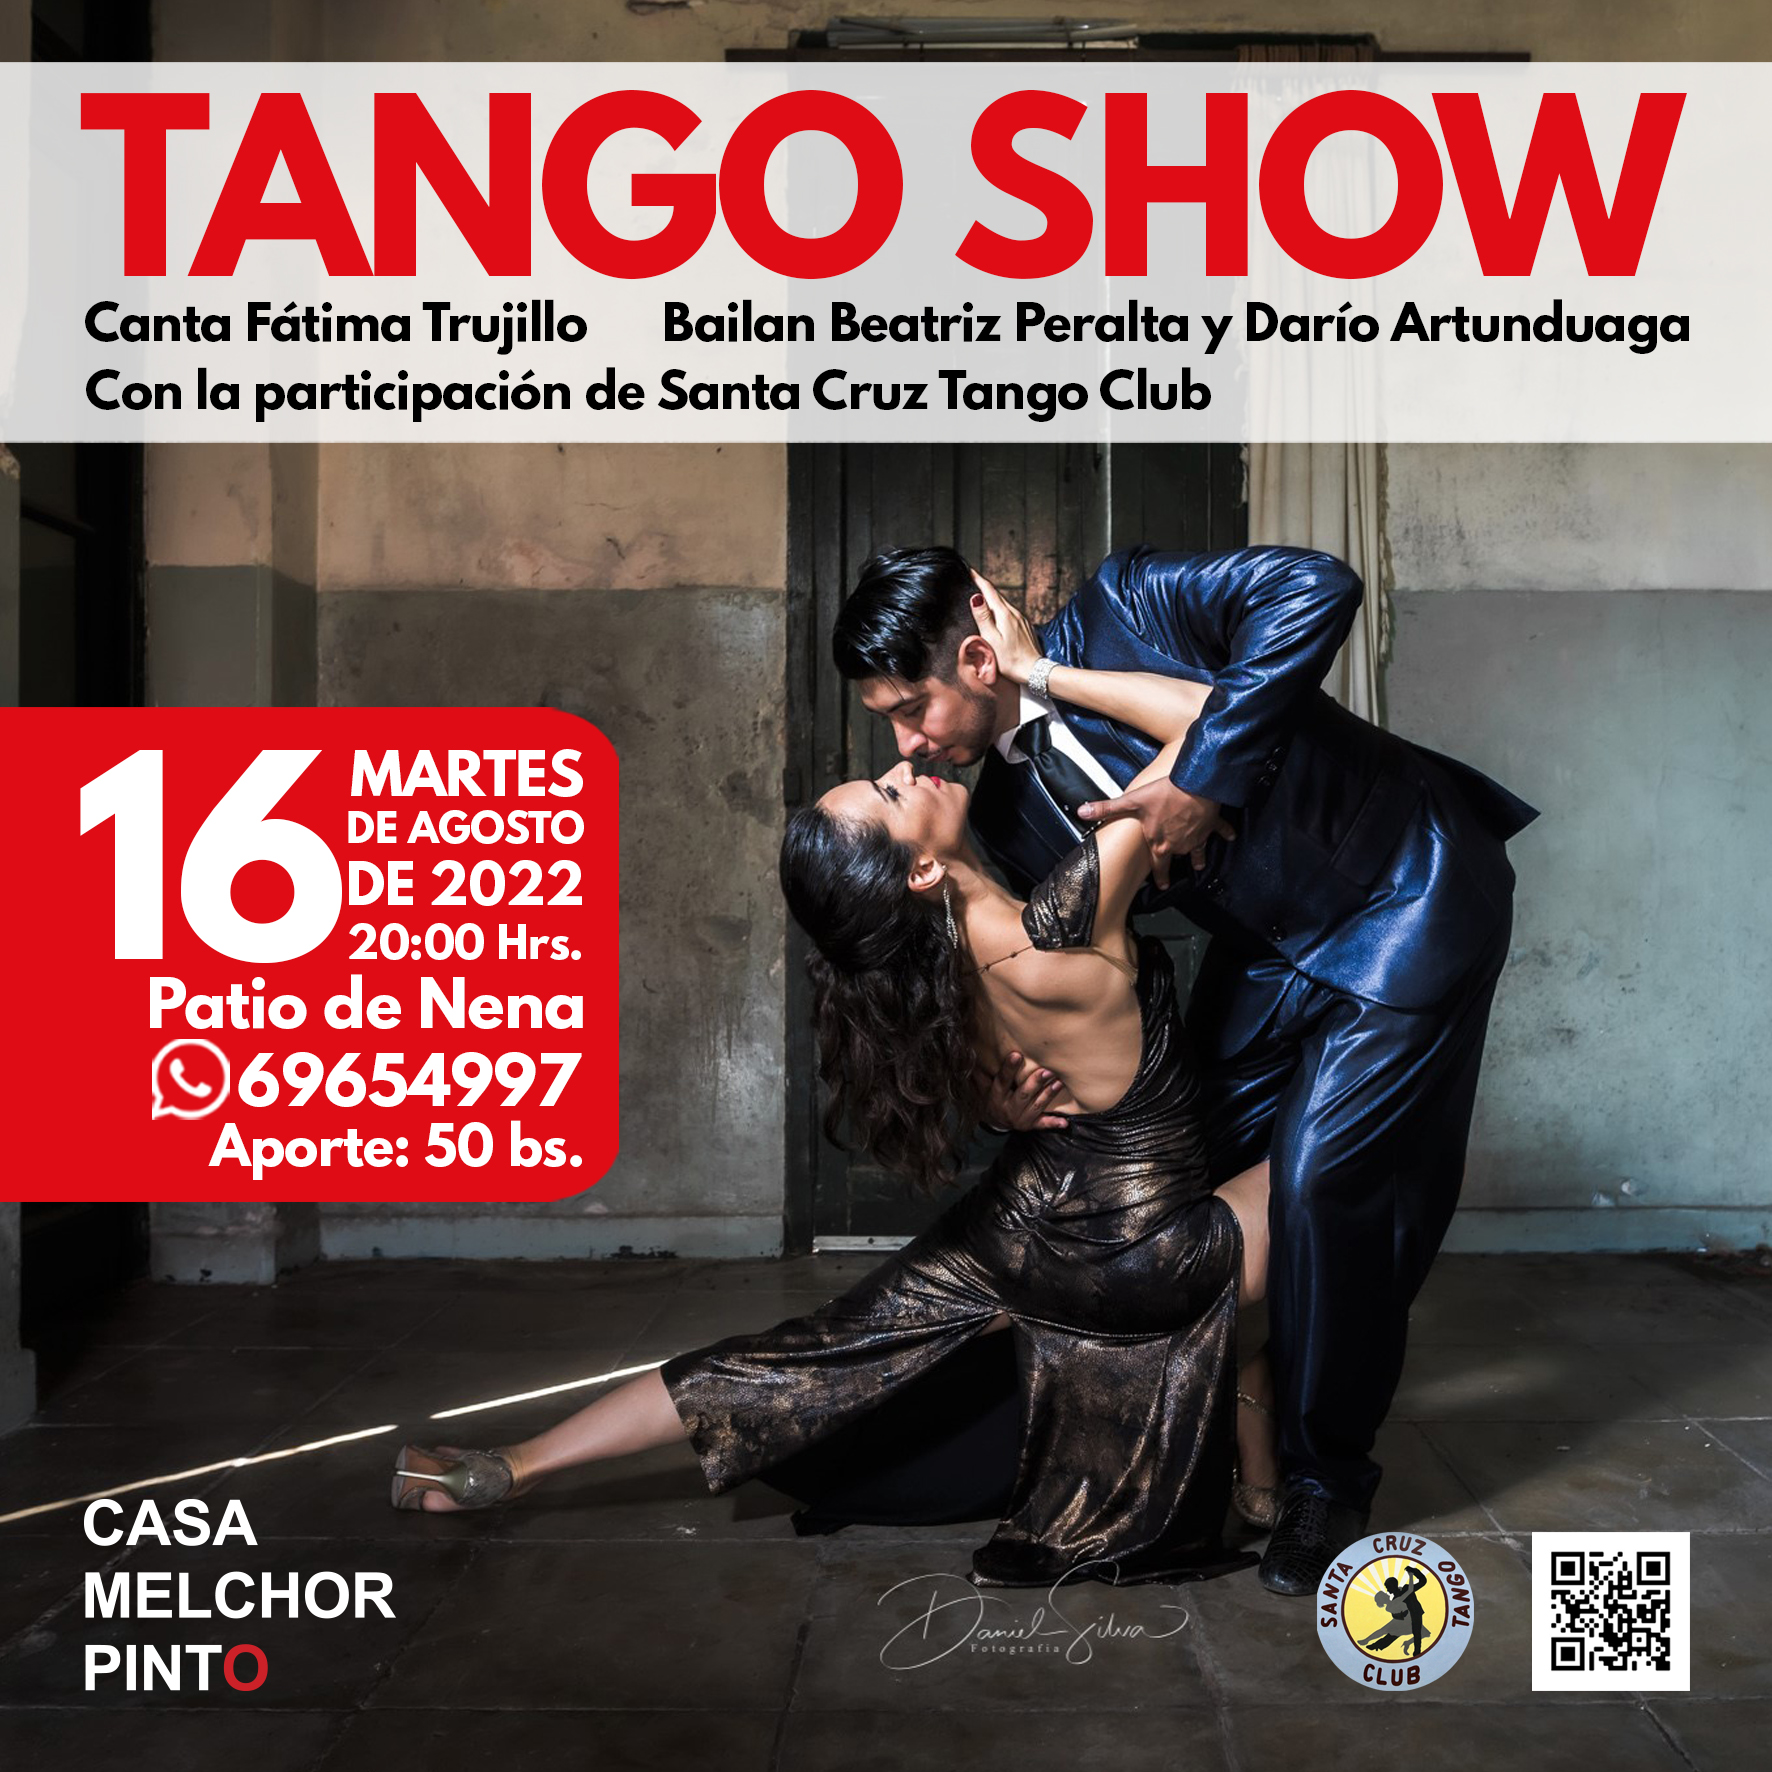 Tango show 16 ago 2022